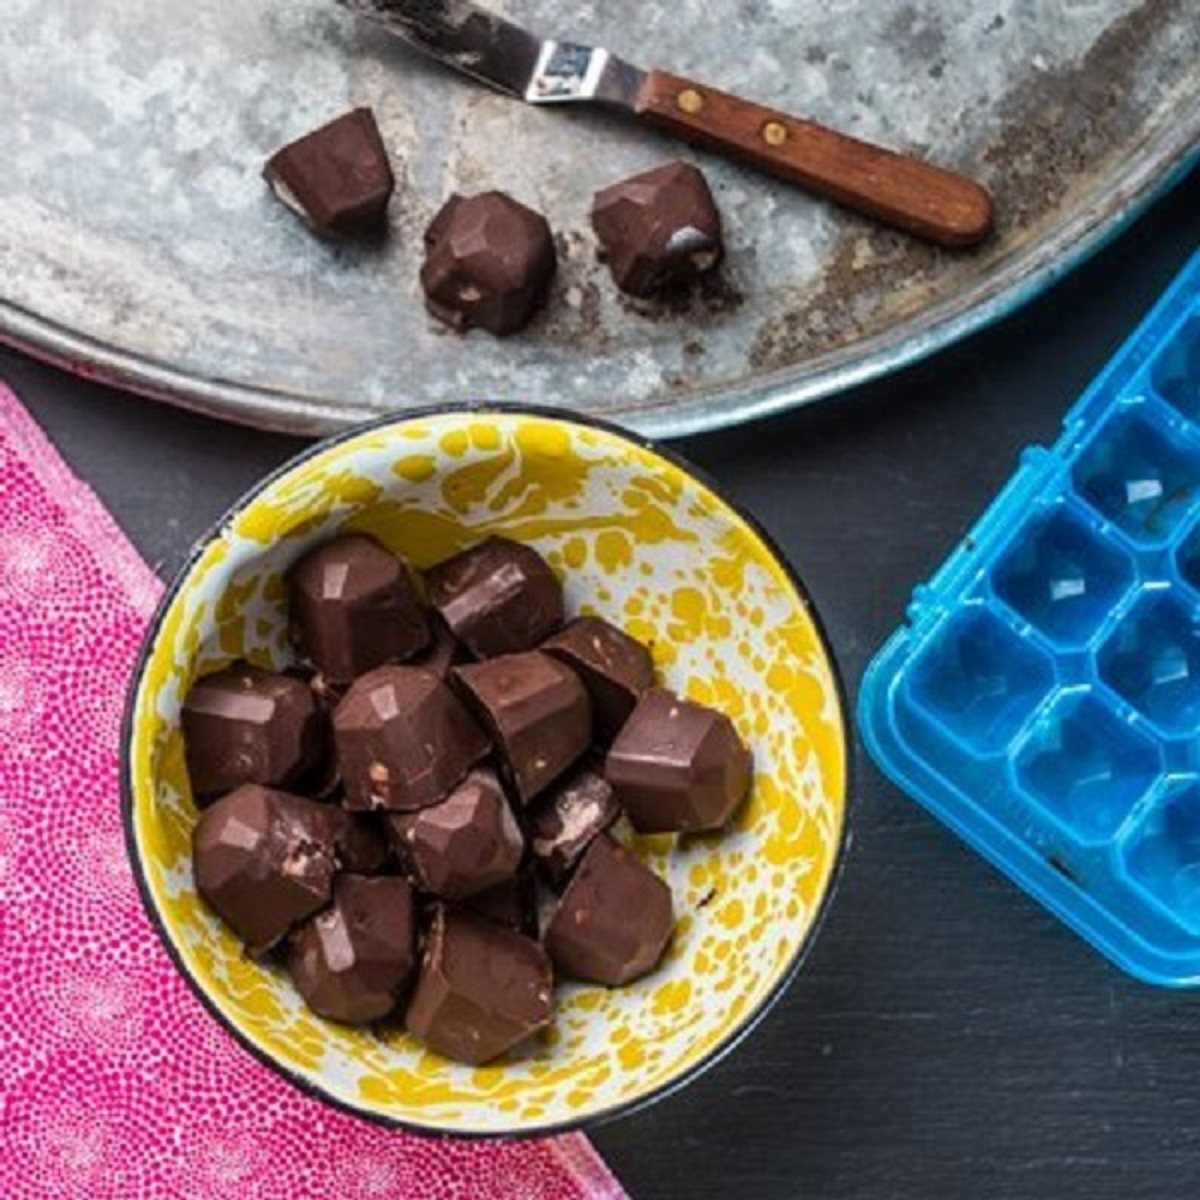 מתכון טראפלס שוקולד כשר לפסח באדיבות בן אנד גריס צילום יחצ  (6)